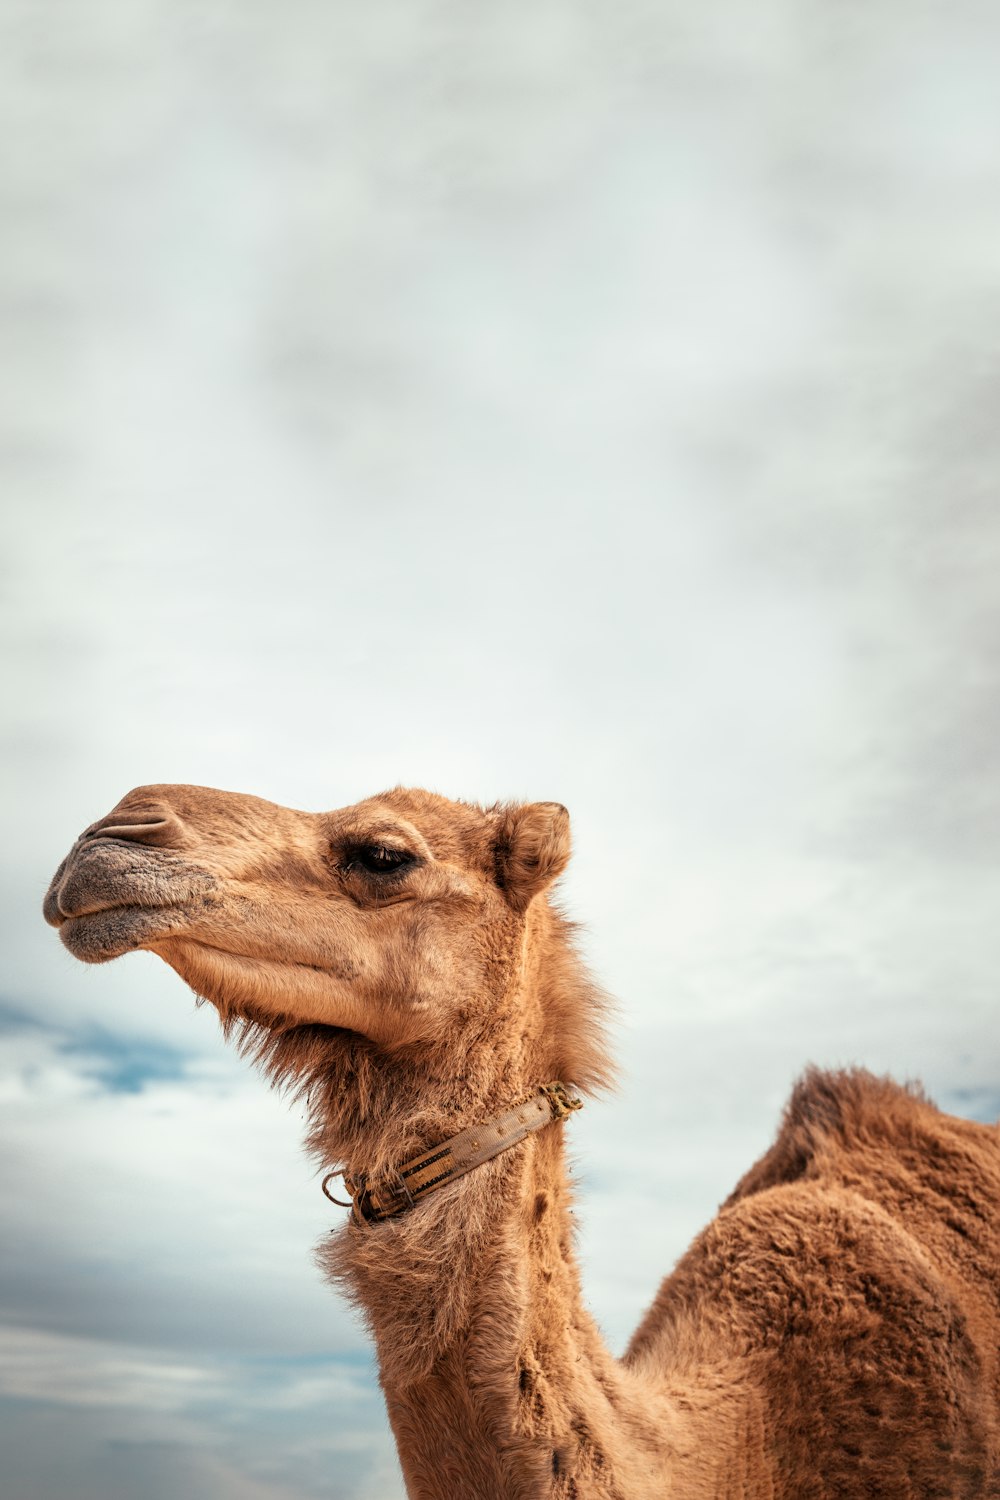 camello marrón bajo nubes blancas durante el día